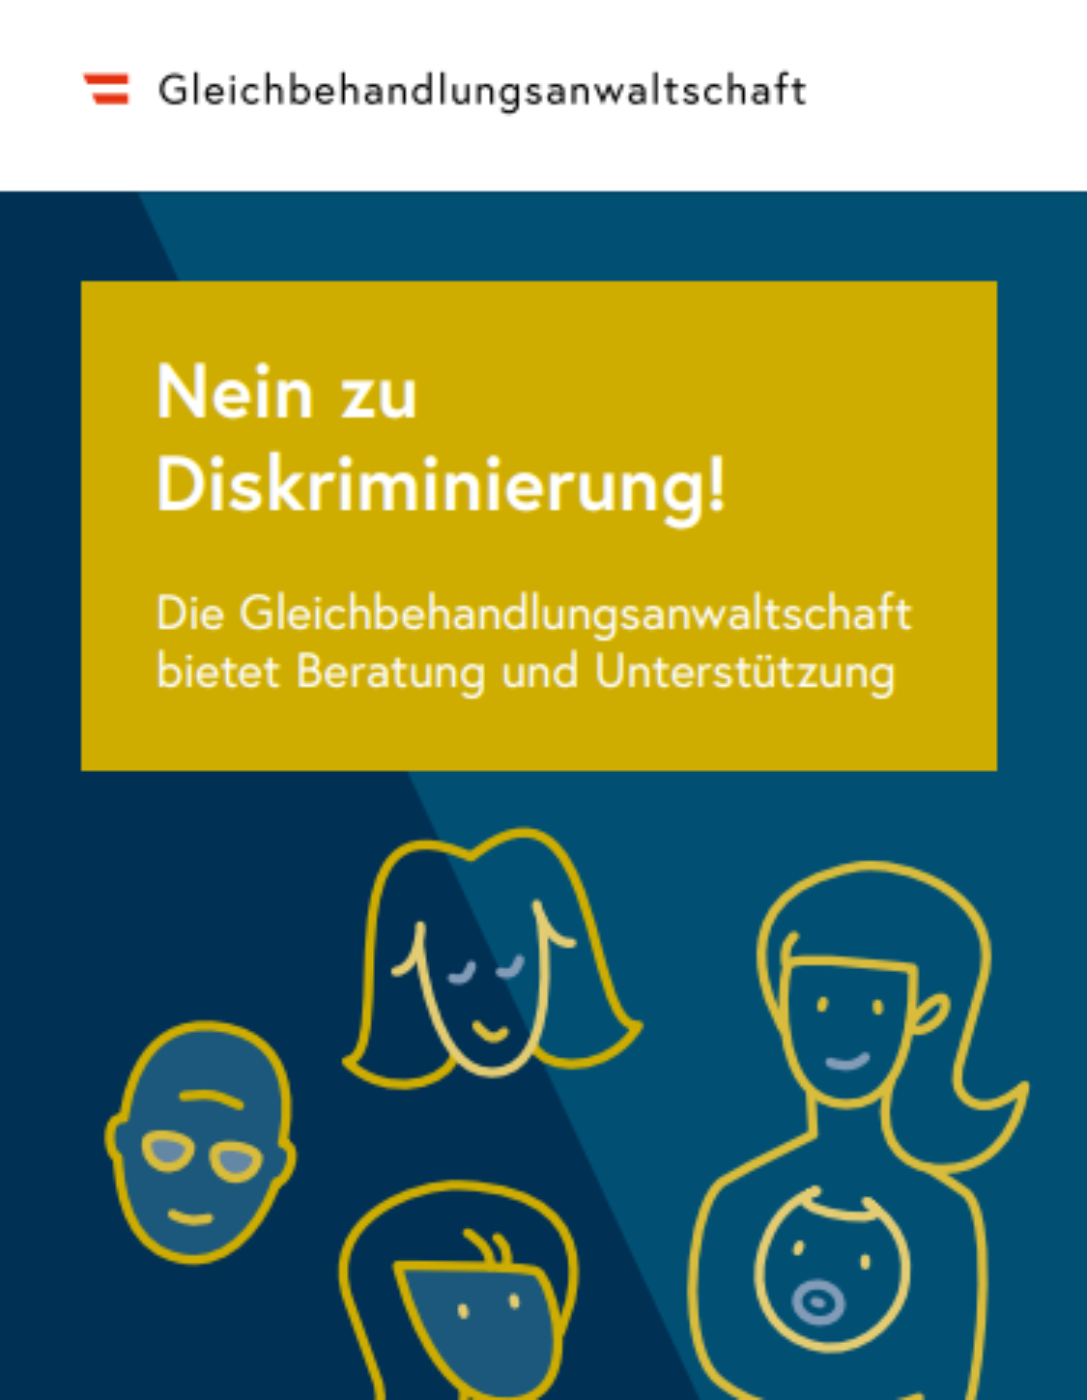 Deckblatt der Broschüre "Nein zu Diskriminierung!" zeigt verschiedene gezeichnete Köpfe in gelb auf blauem Hintergrund.